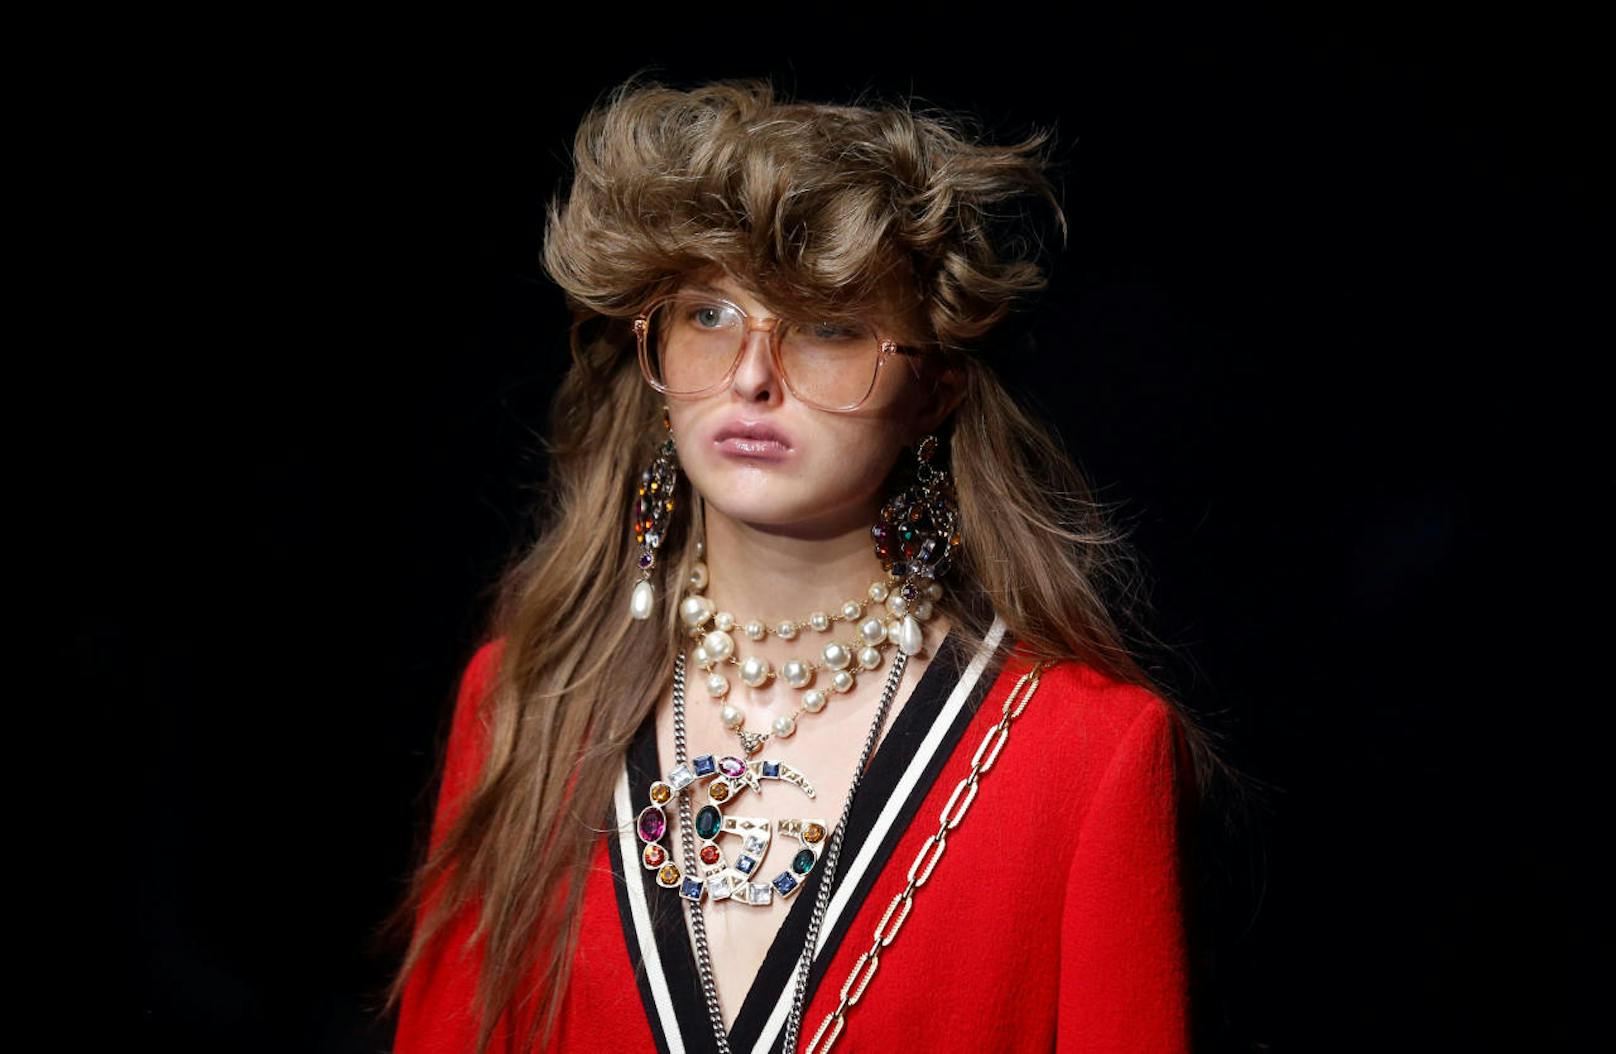 Gleich zu Beginn der Mailänder Modewoche mit den Sommer-2018-Trends sorgte Gucci für ein Highlight: Chefdesigner Alessandro Michele lässt jeden sein, wer er eben ist und sucht damit das Glück im Individualismus.